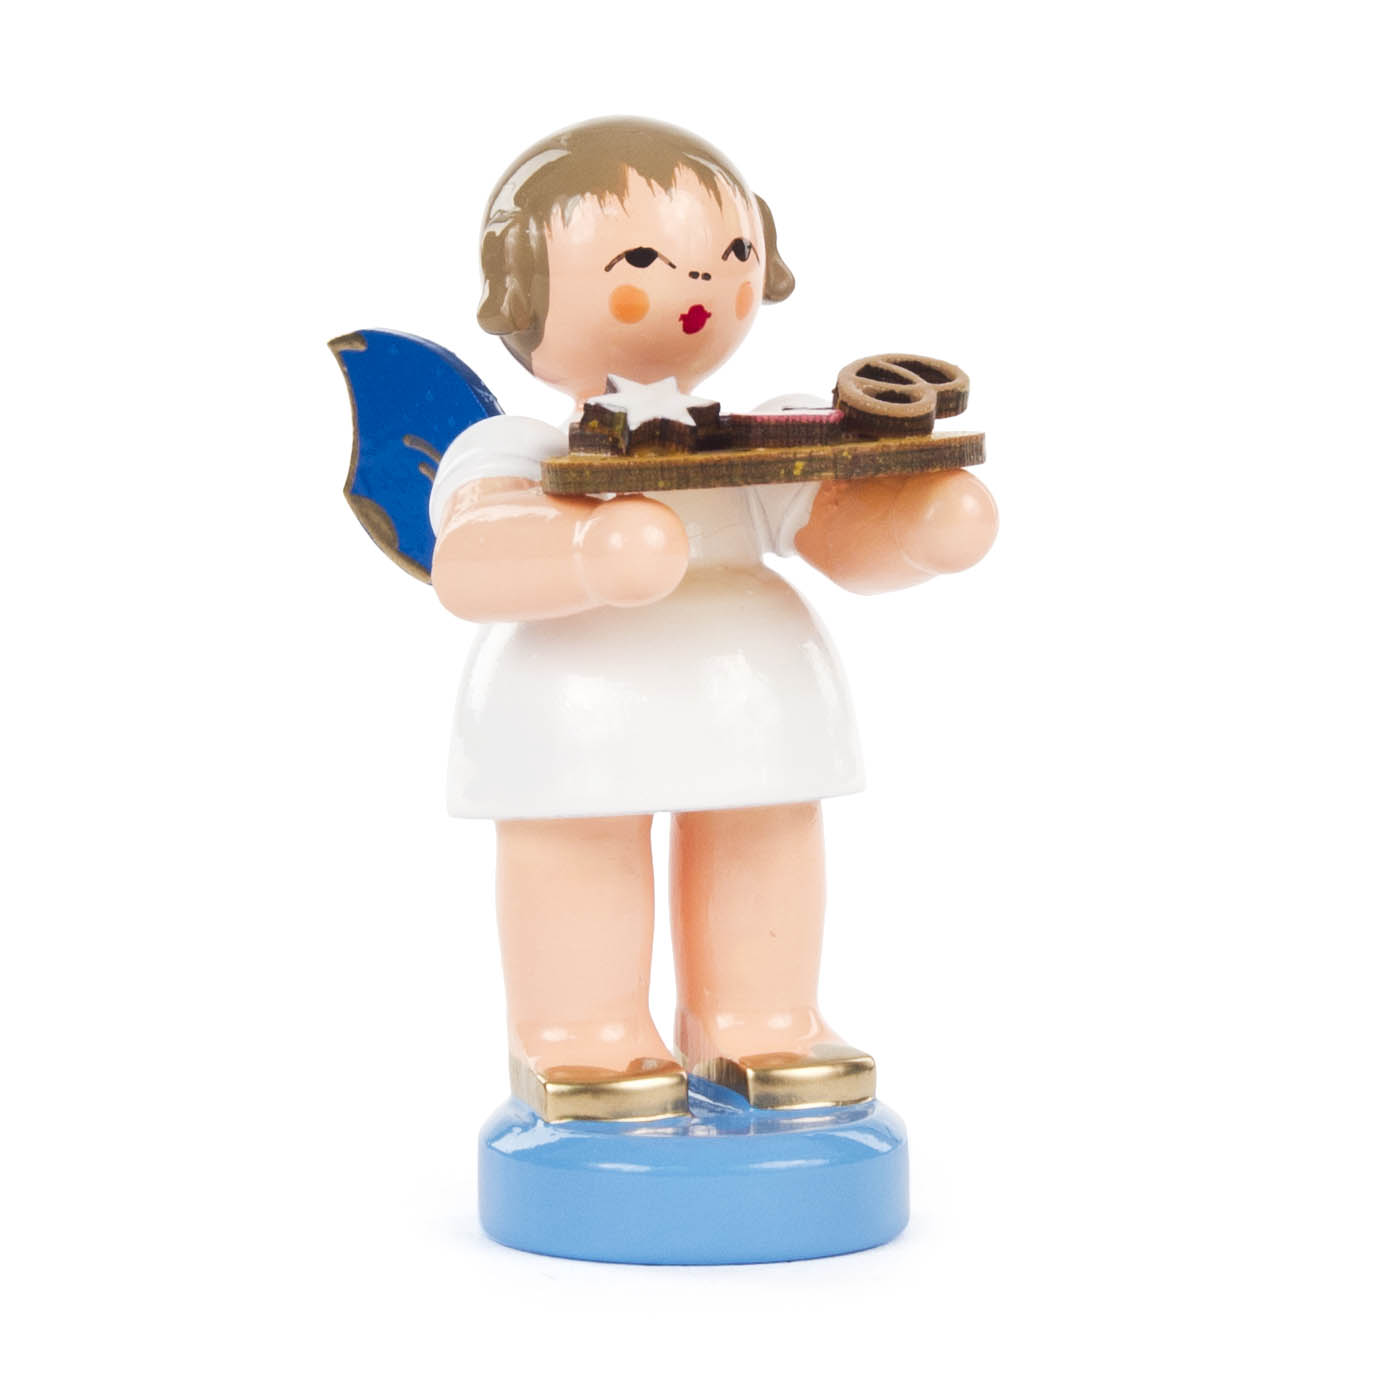 Engel mit Lebkuchenblech stehend, blaue Flügel im Dregeno Online Shop günstig kaufen